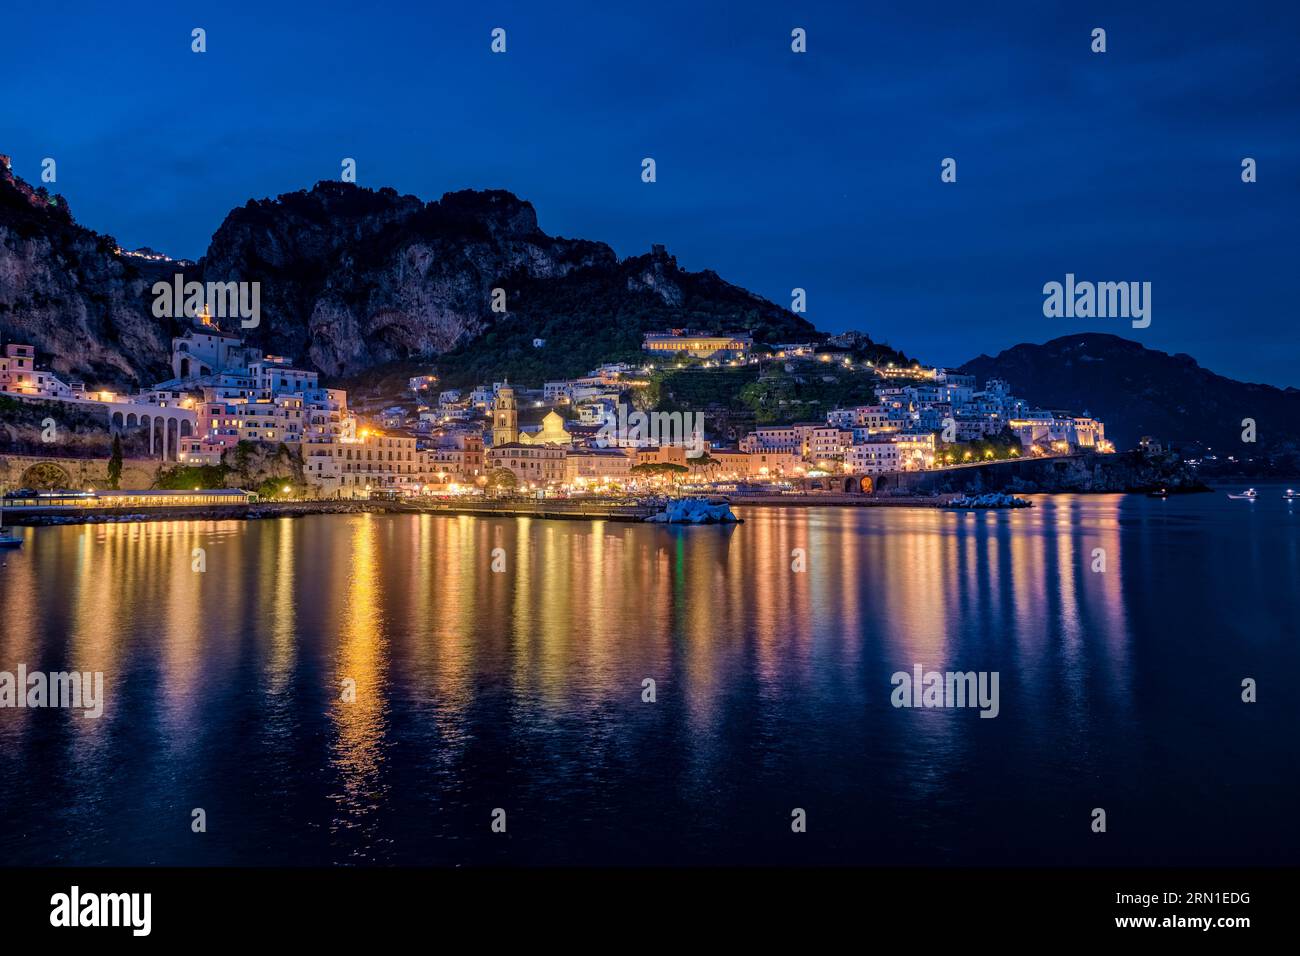 Die Häuser der Stadt Amalfi an der Amalfiküste, beleuchtet bei Nacht, reflektiert im Mittelmeer. Stockfoto